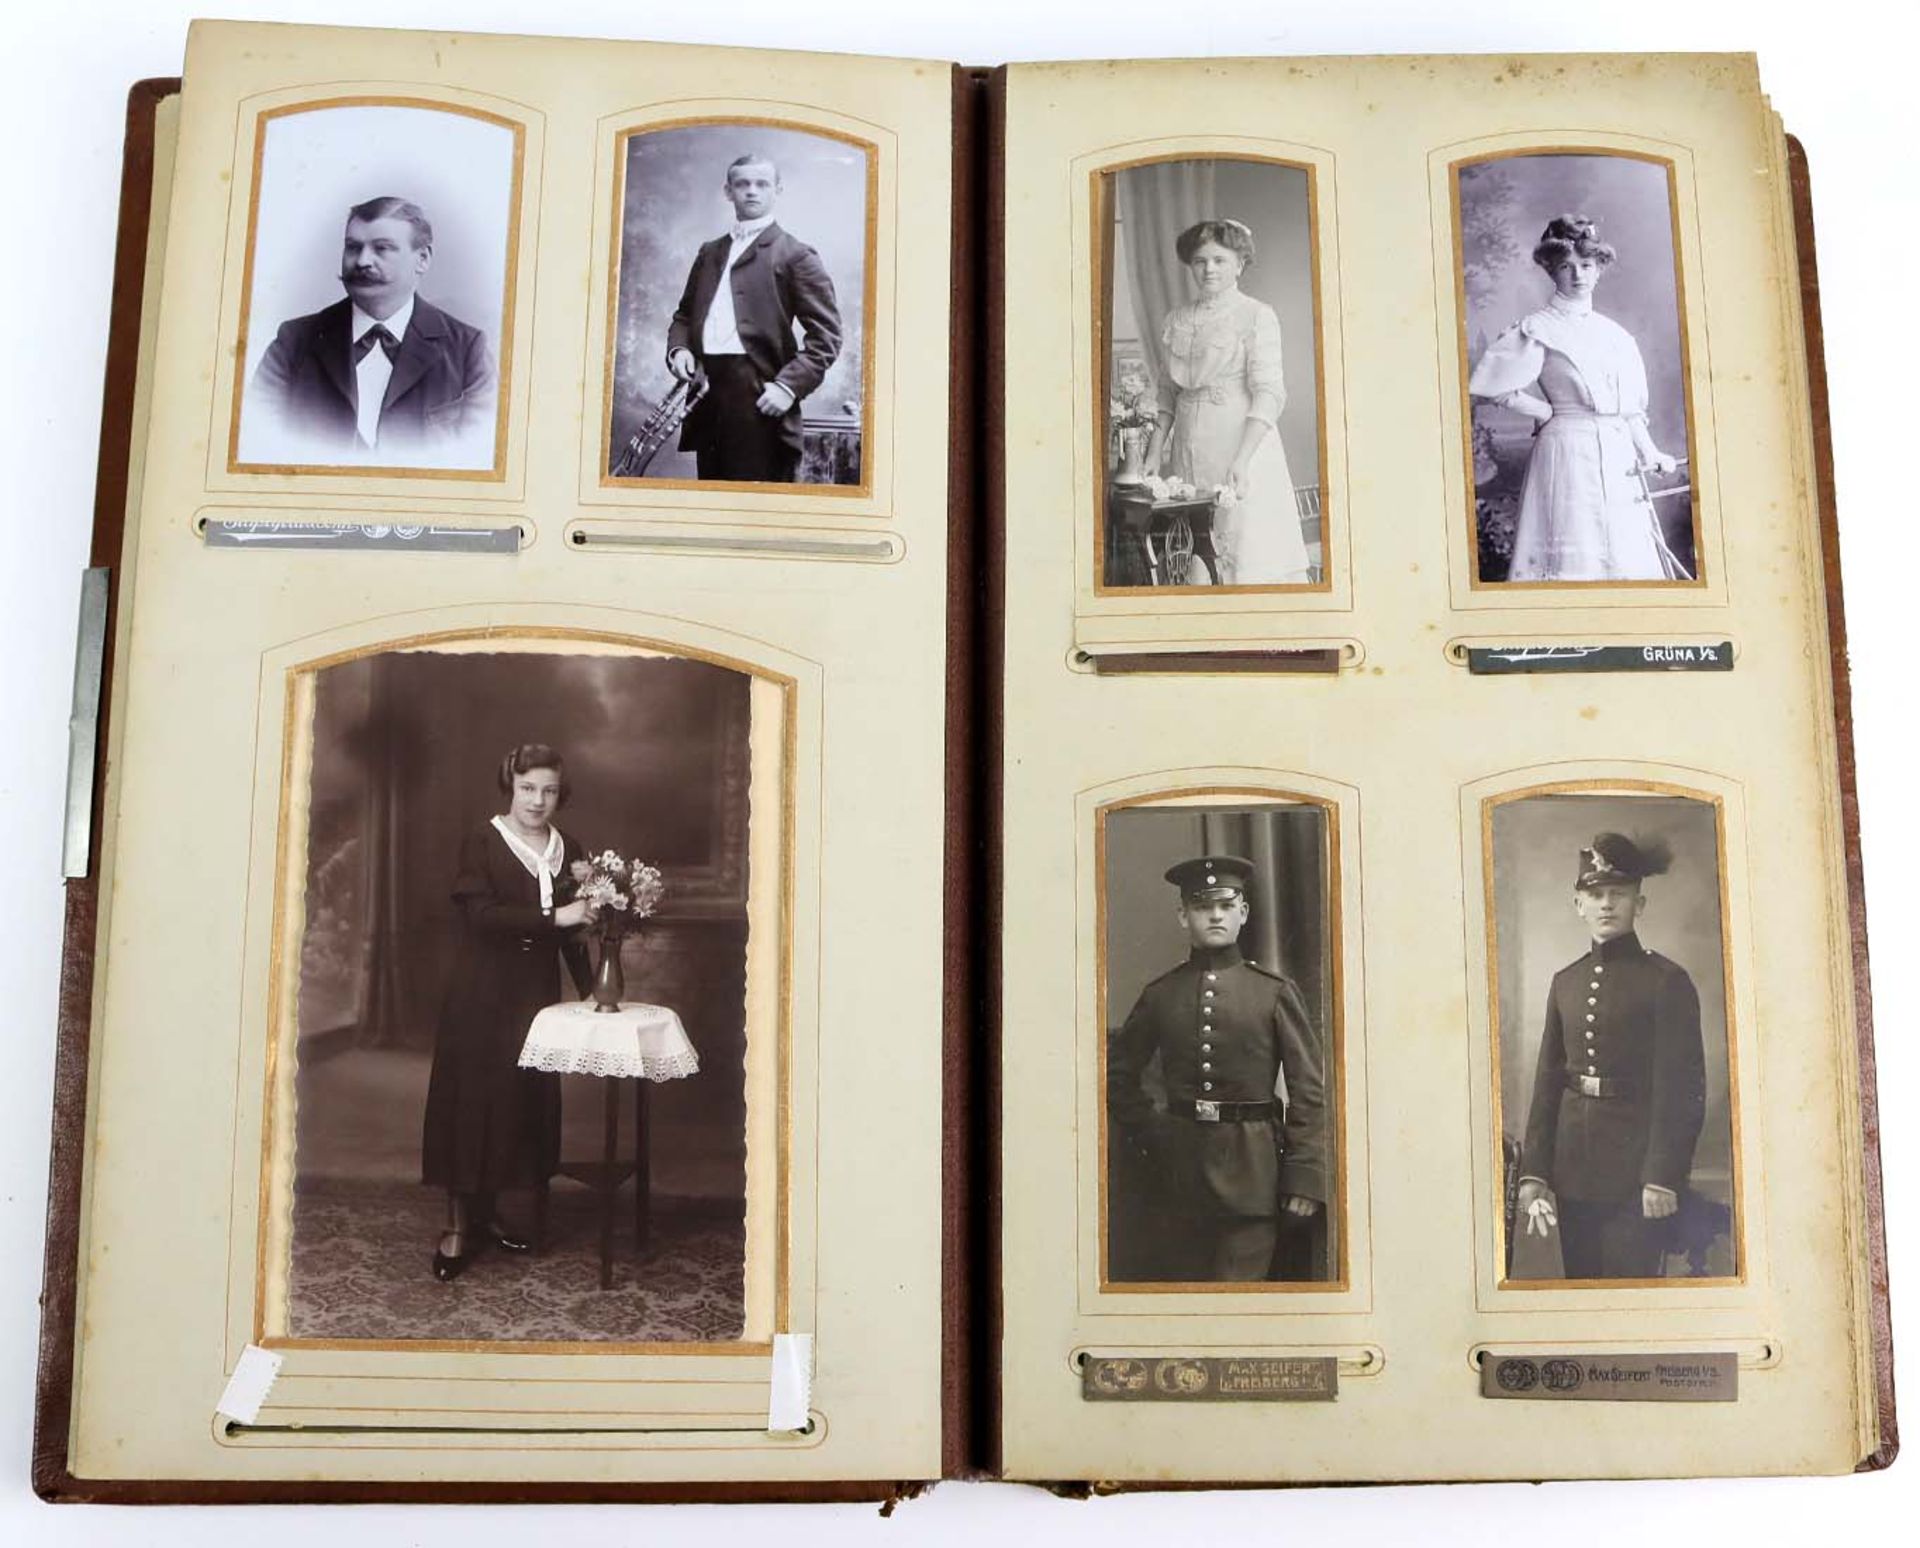 Jugendstil Album um 1900/15braunes Lederalbum mit geprägtem Jugendstil Dkeor sowie aufgelegter - Image 3 of 4